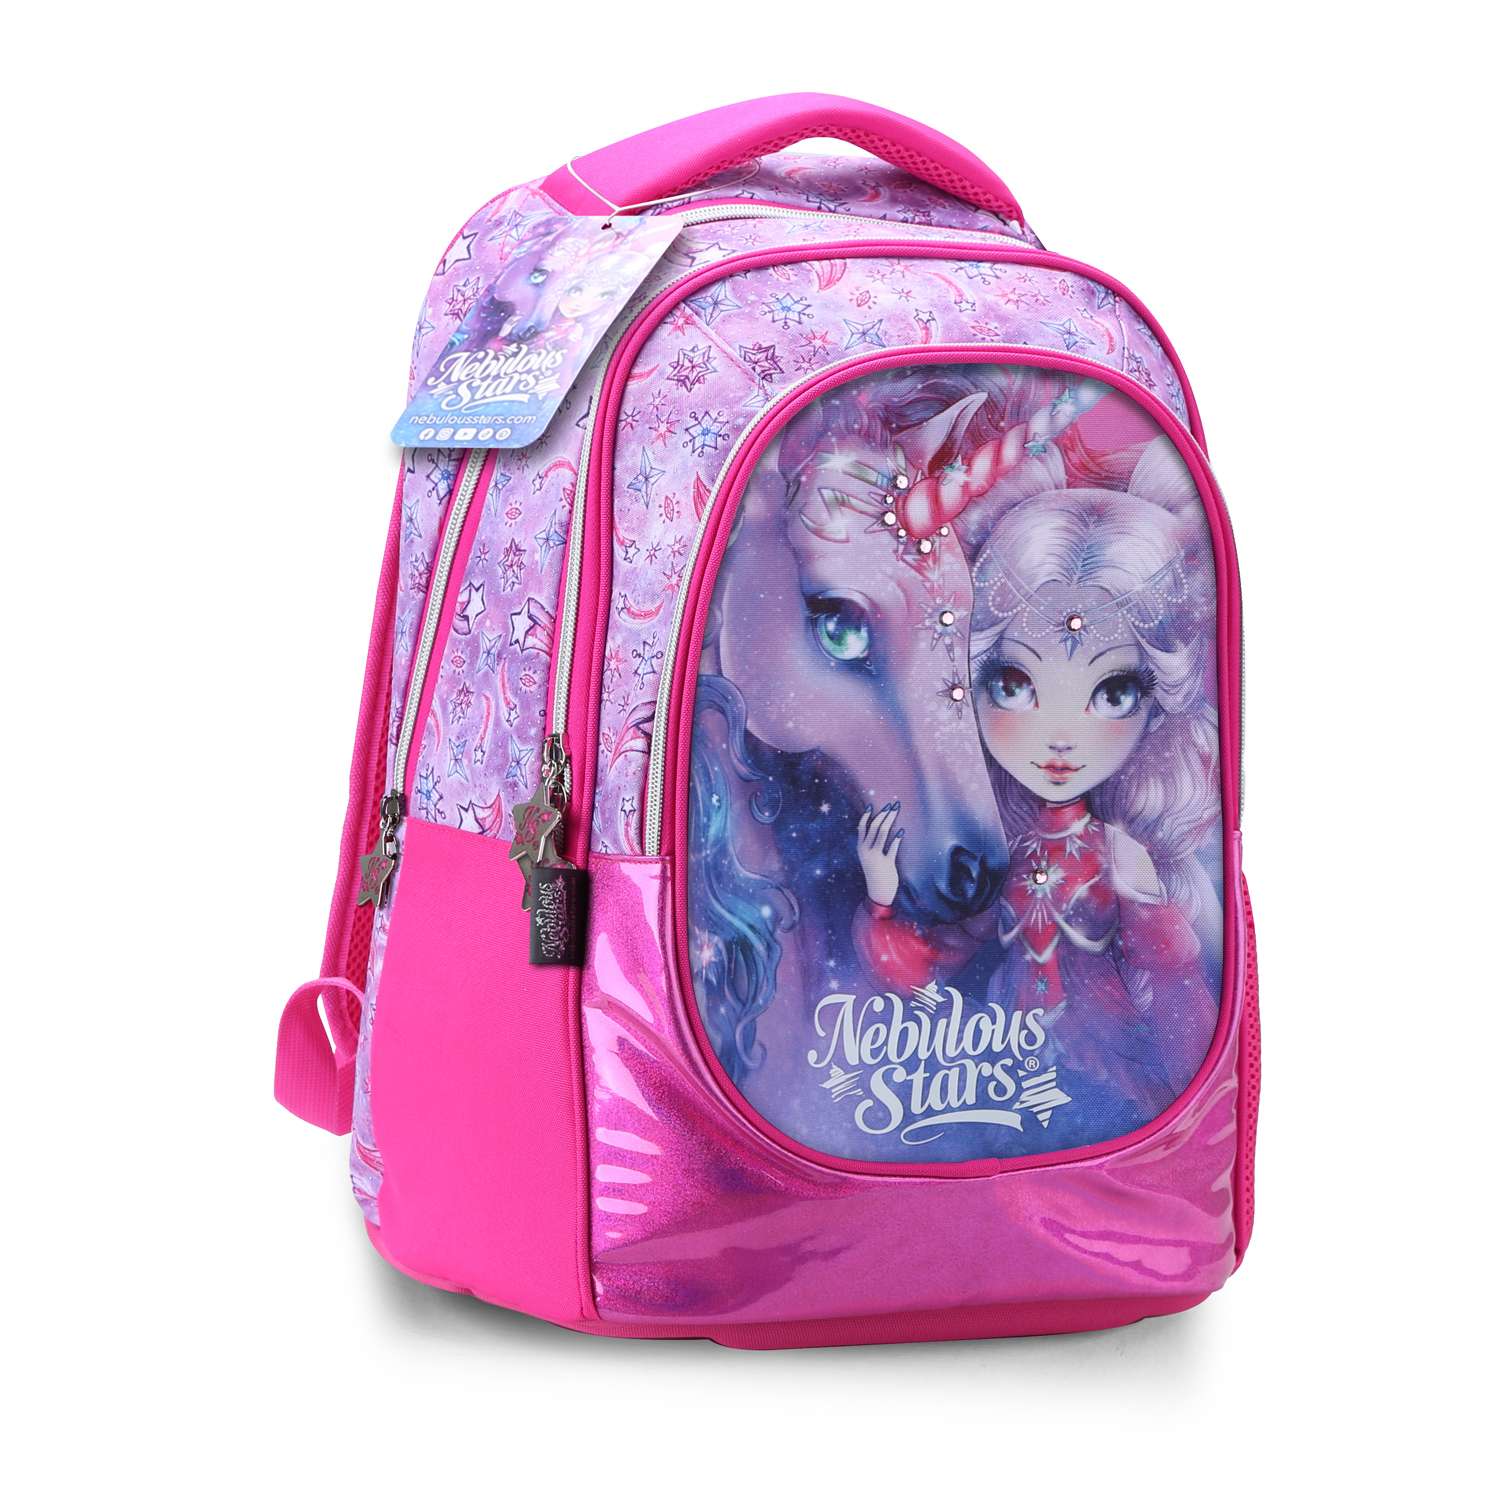 Школьный рюкзак Nebulous Stars для девочек - фото 2